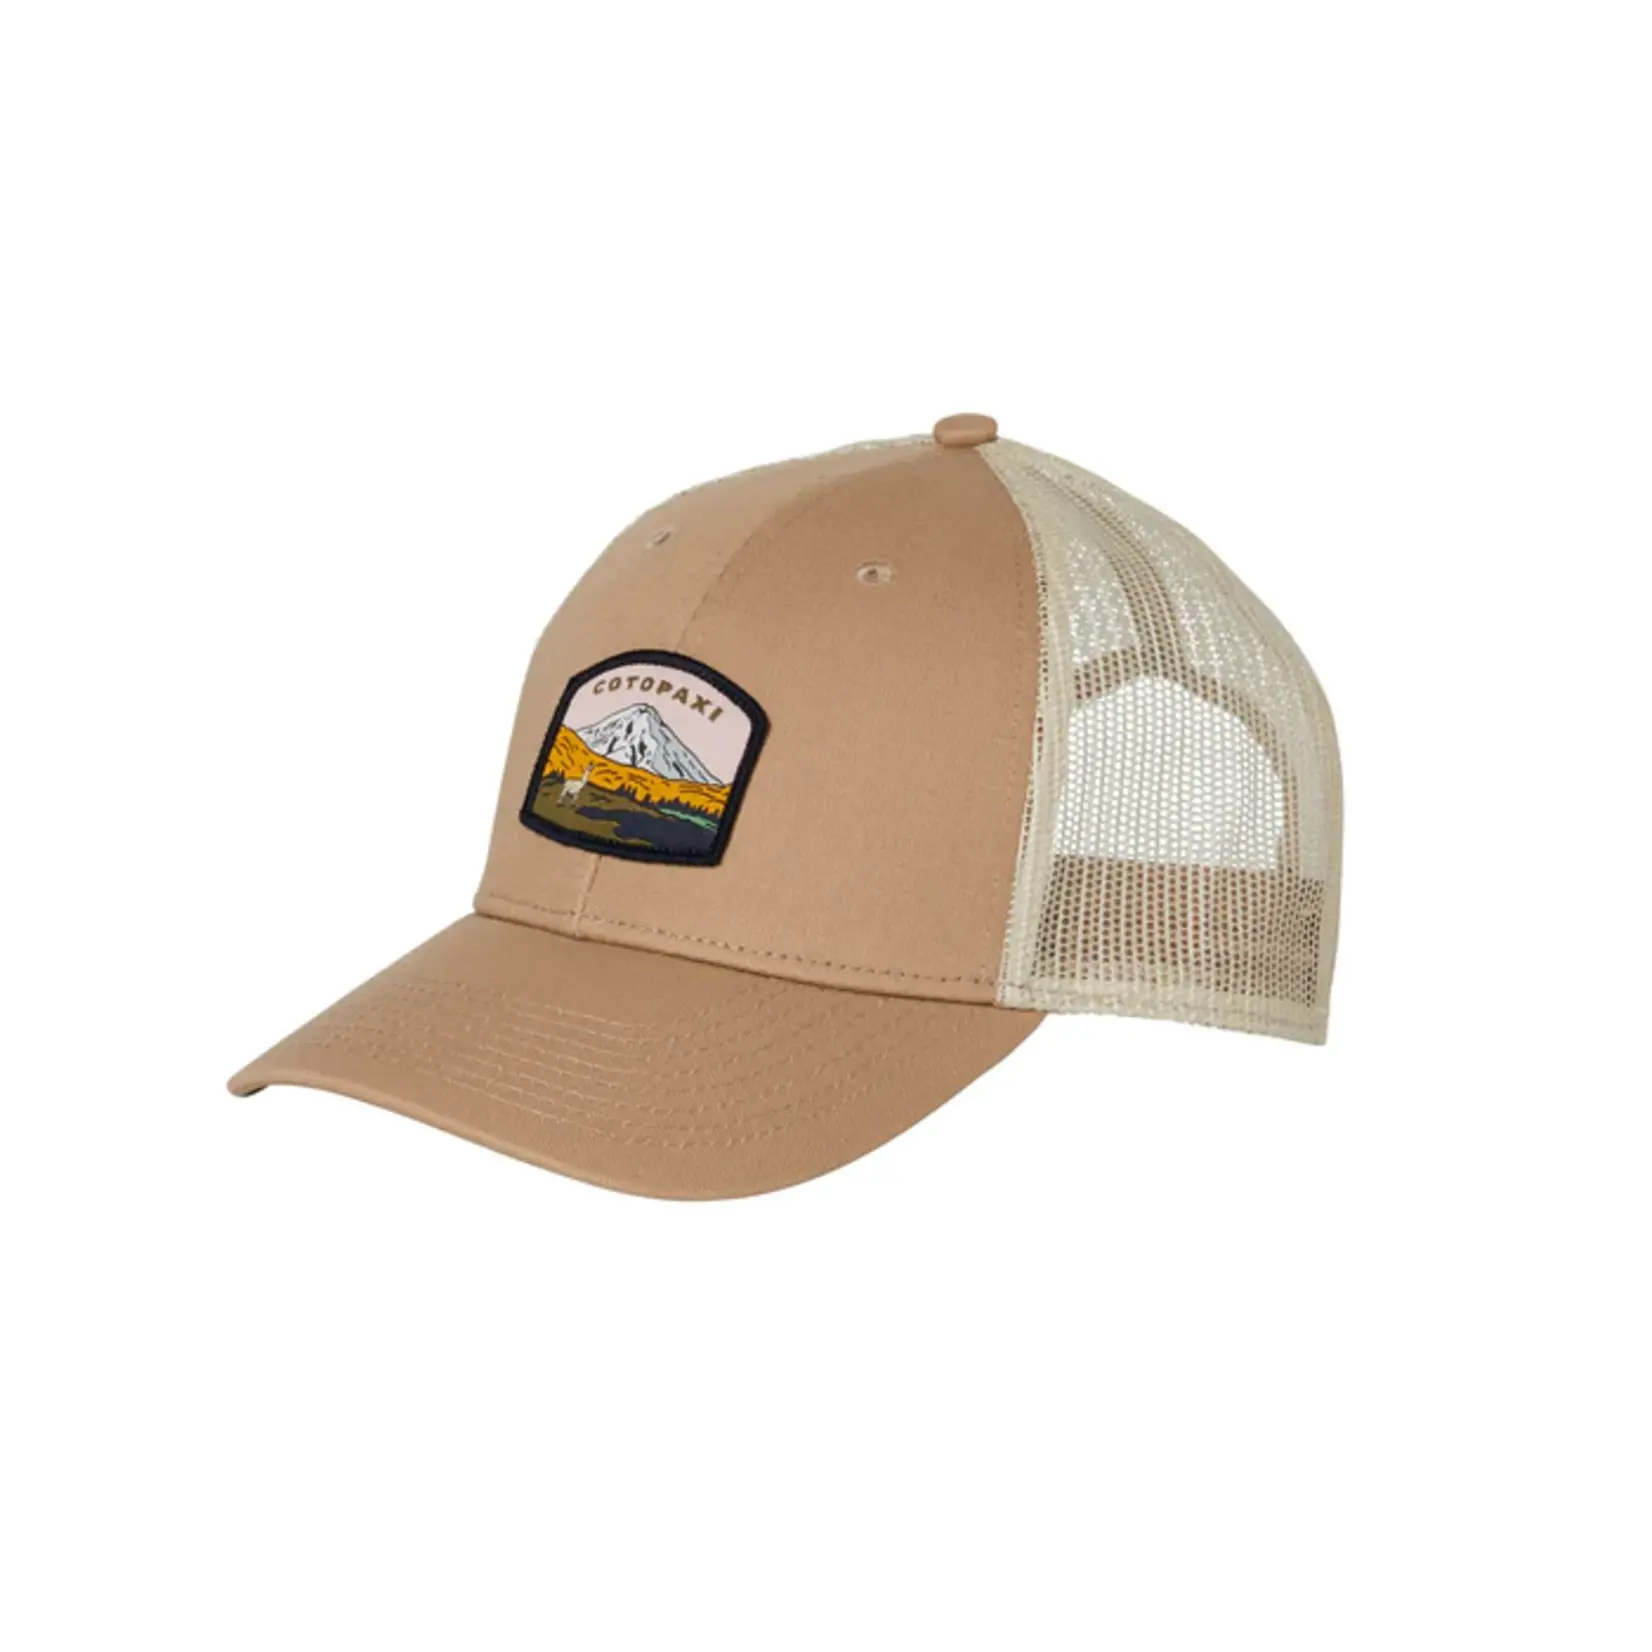 Cotopaxi Cotopaxi Llamascape Trucker Hat